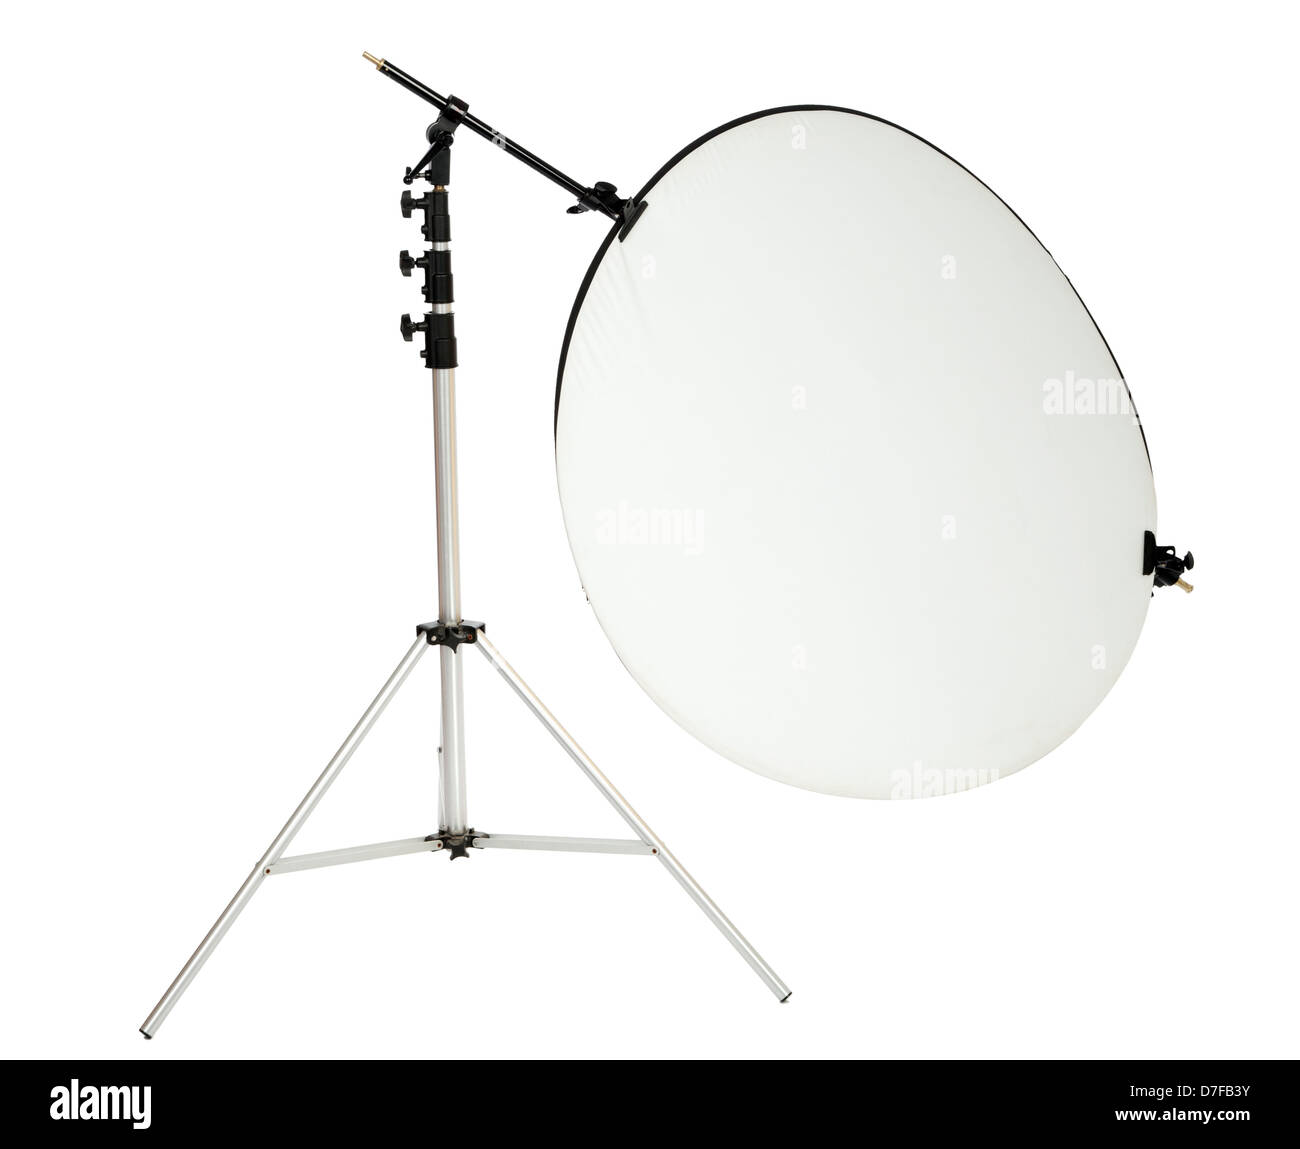 Runde weiße Reflektor Besitz bezeichneten Halter setzen auf Beleuchtung Stand bereit für Studio-Fotografie-Nutzung. Isoliert auf weiss Stockfoto